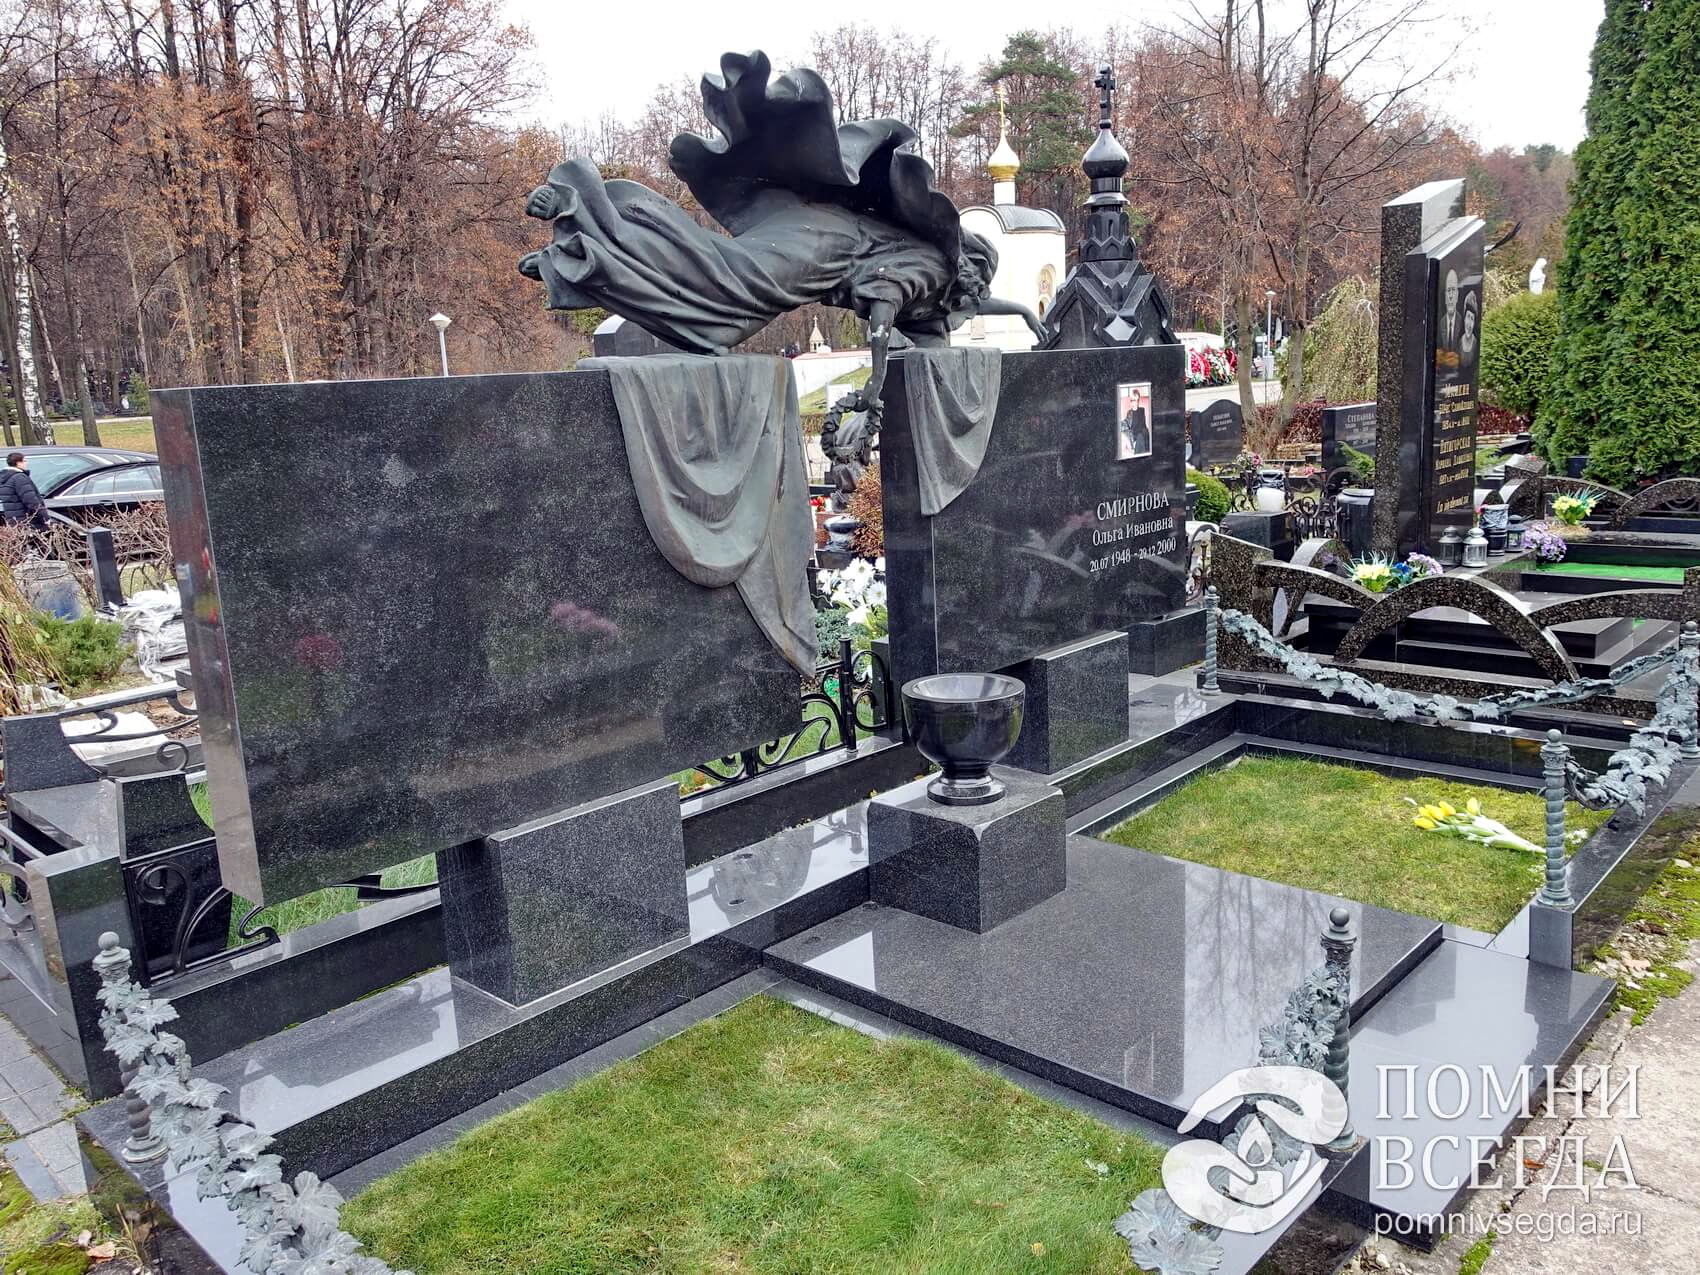 Соединённые скульптурой два широких надгробья